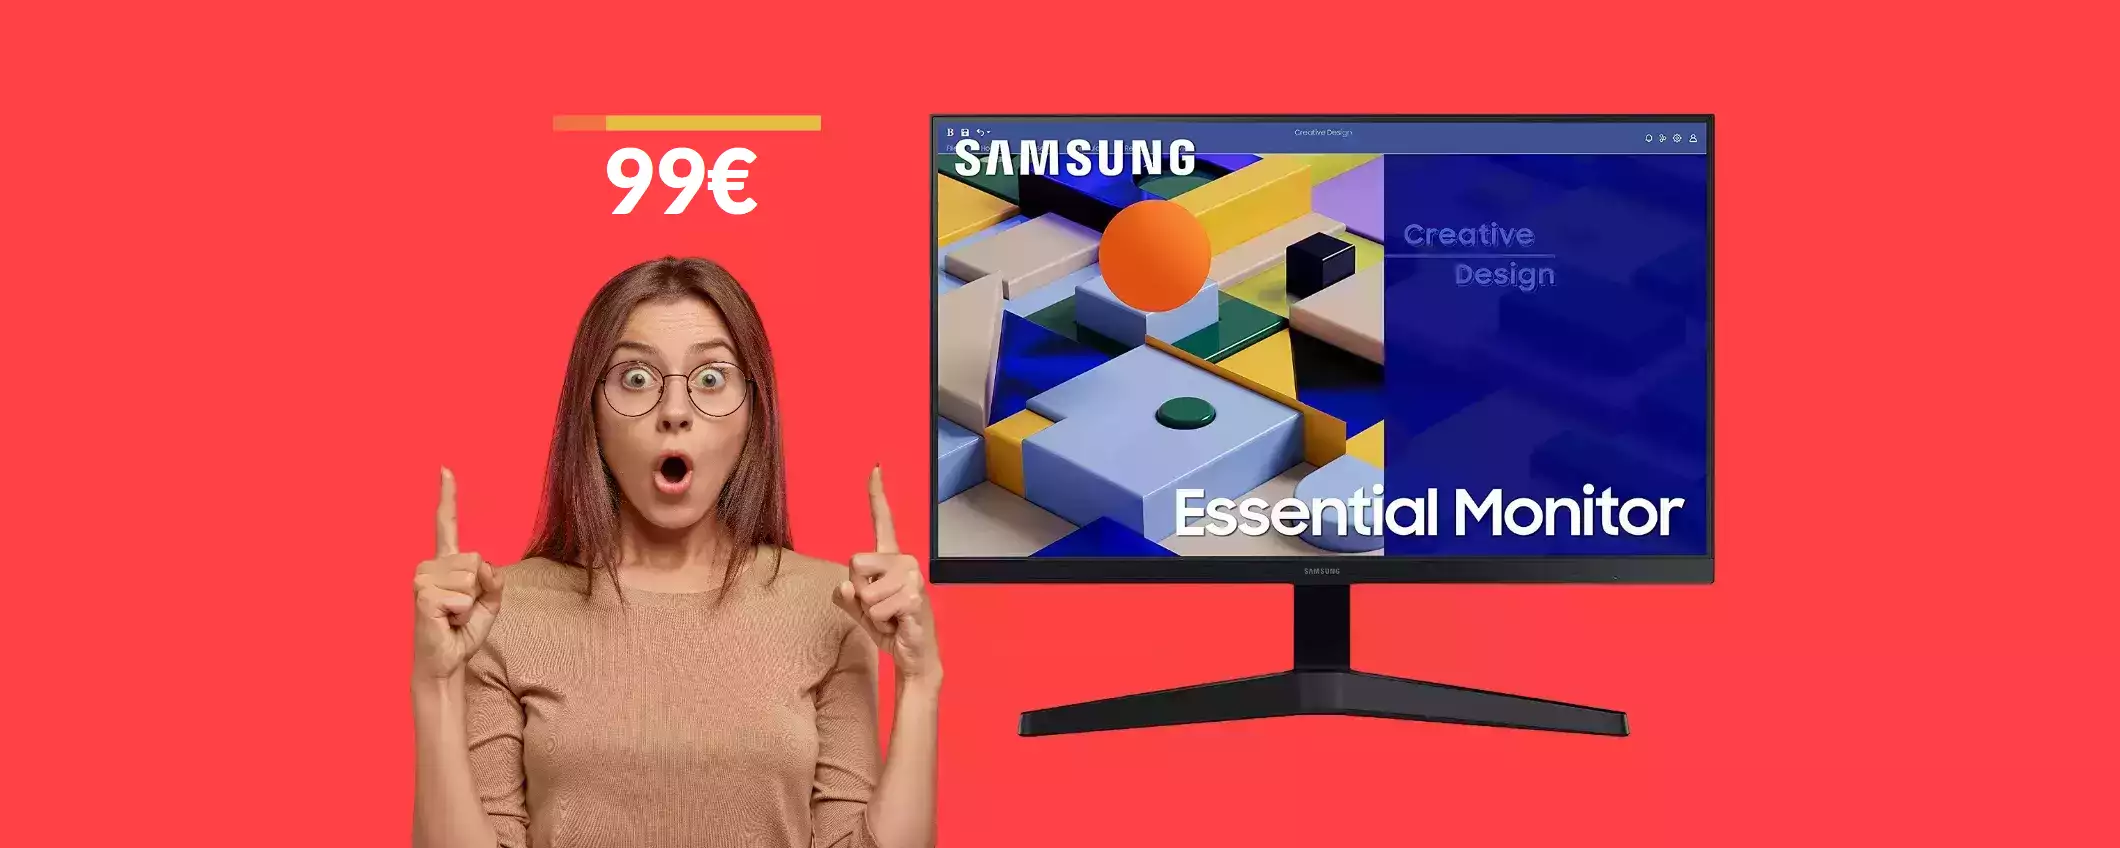 Sai che questo splendido monitor FullHD Samsung costa solo 99€?